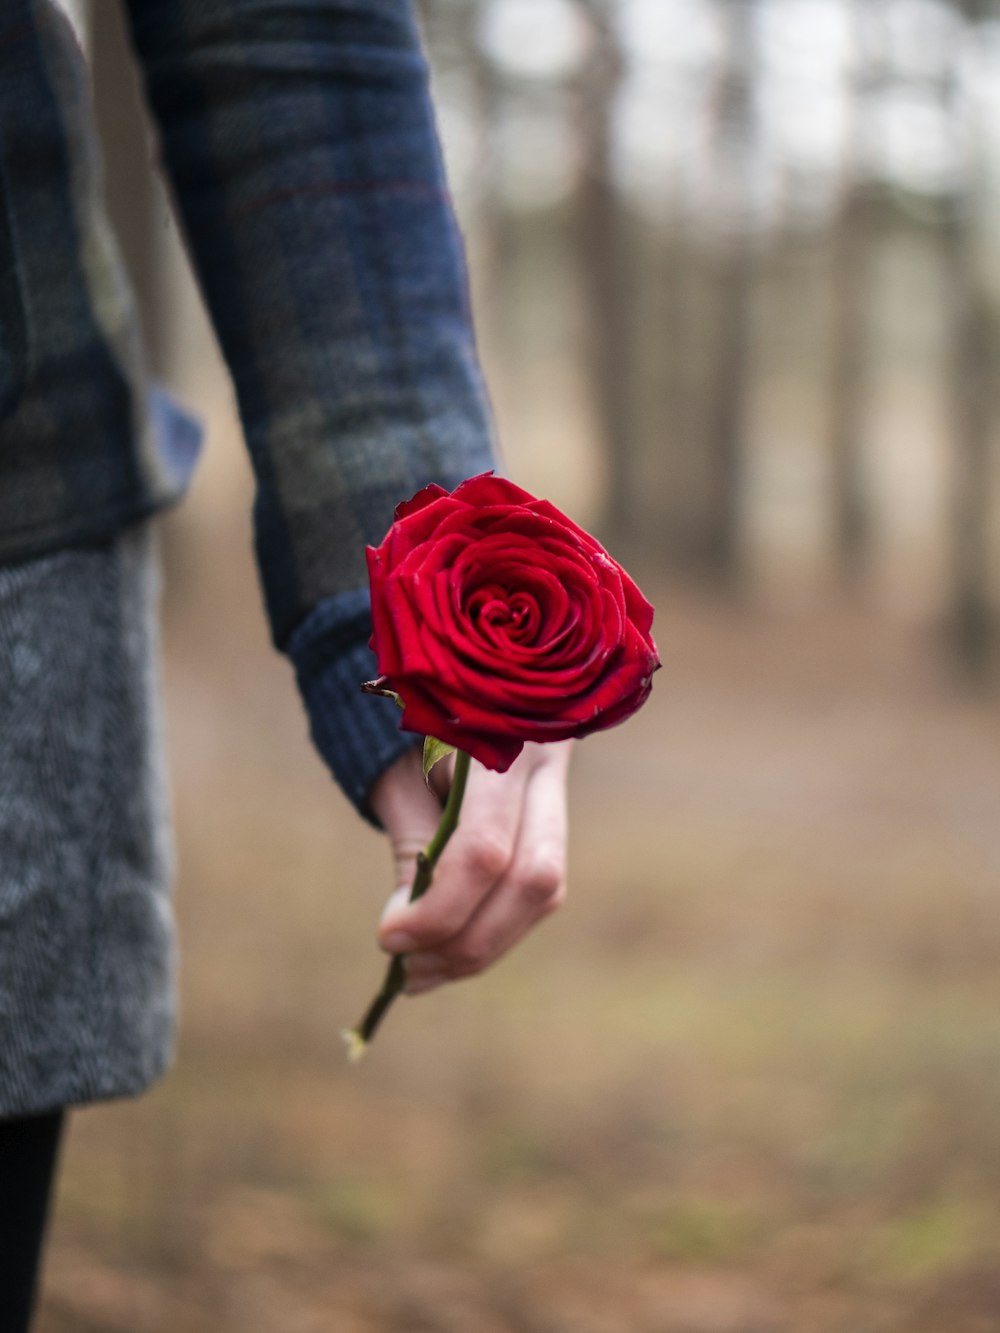 persona sosteniendo la flor de la rosa roja